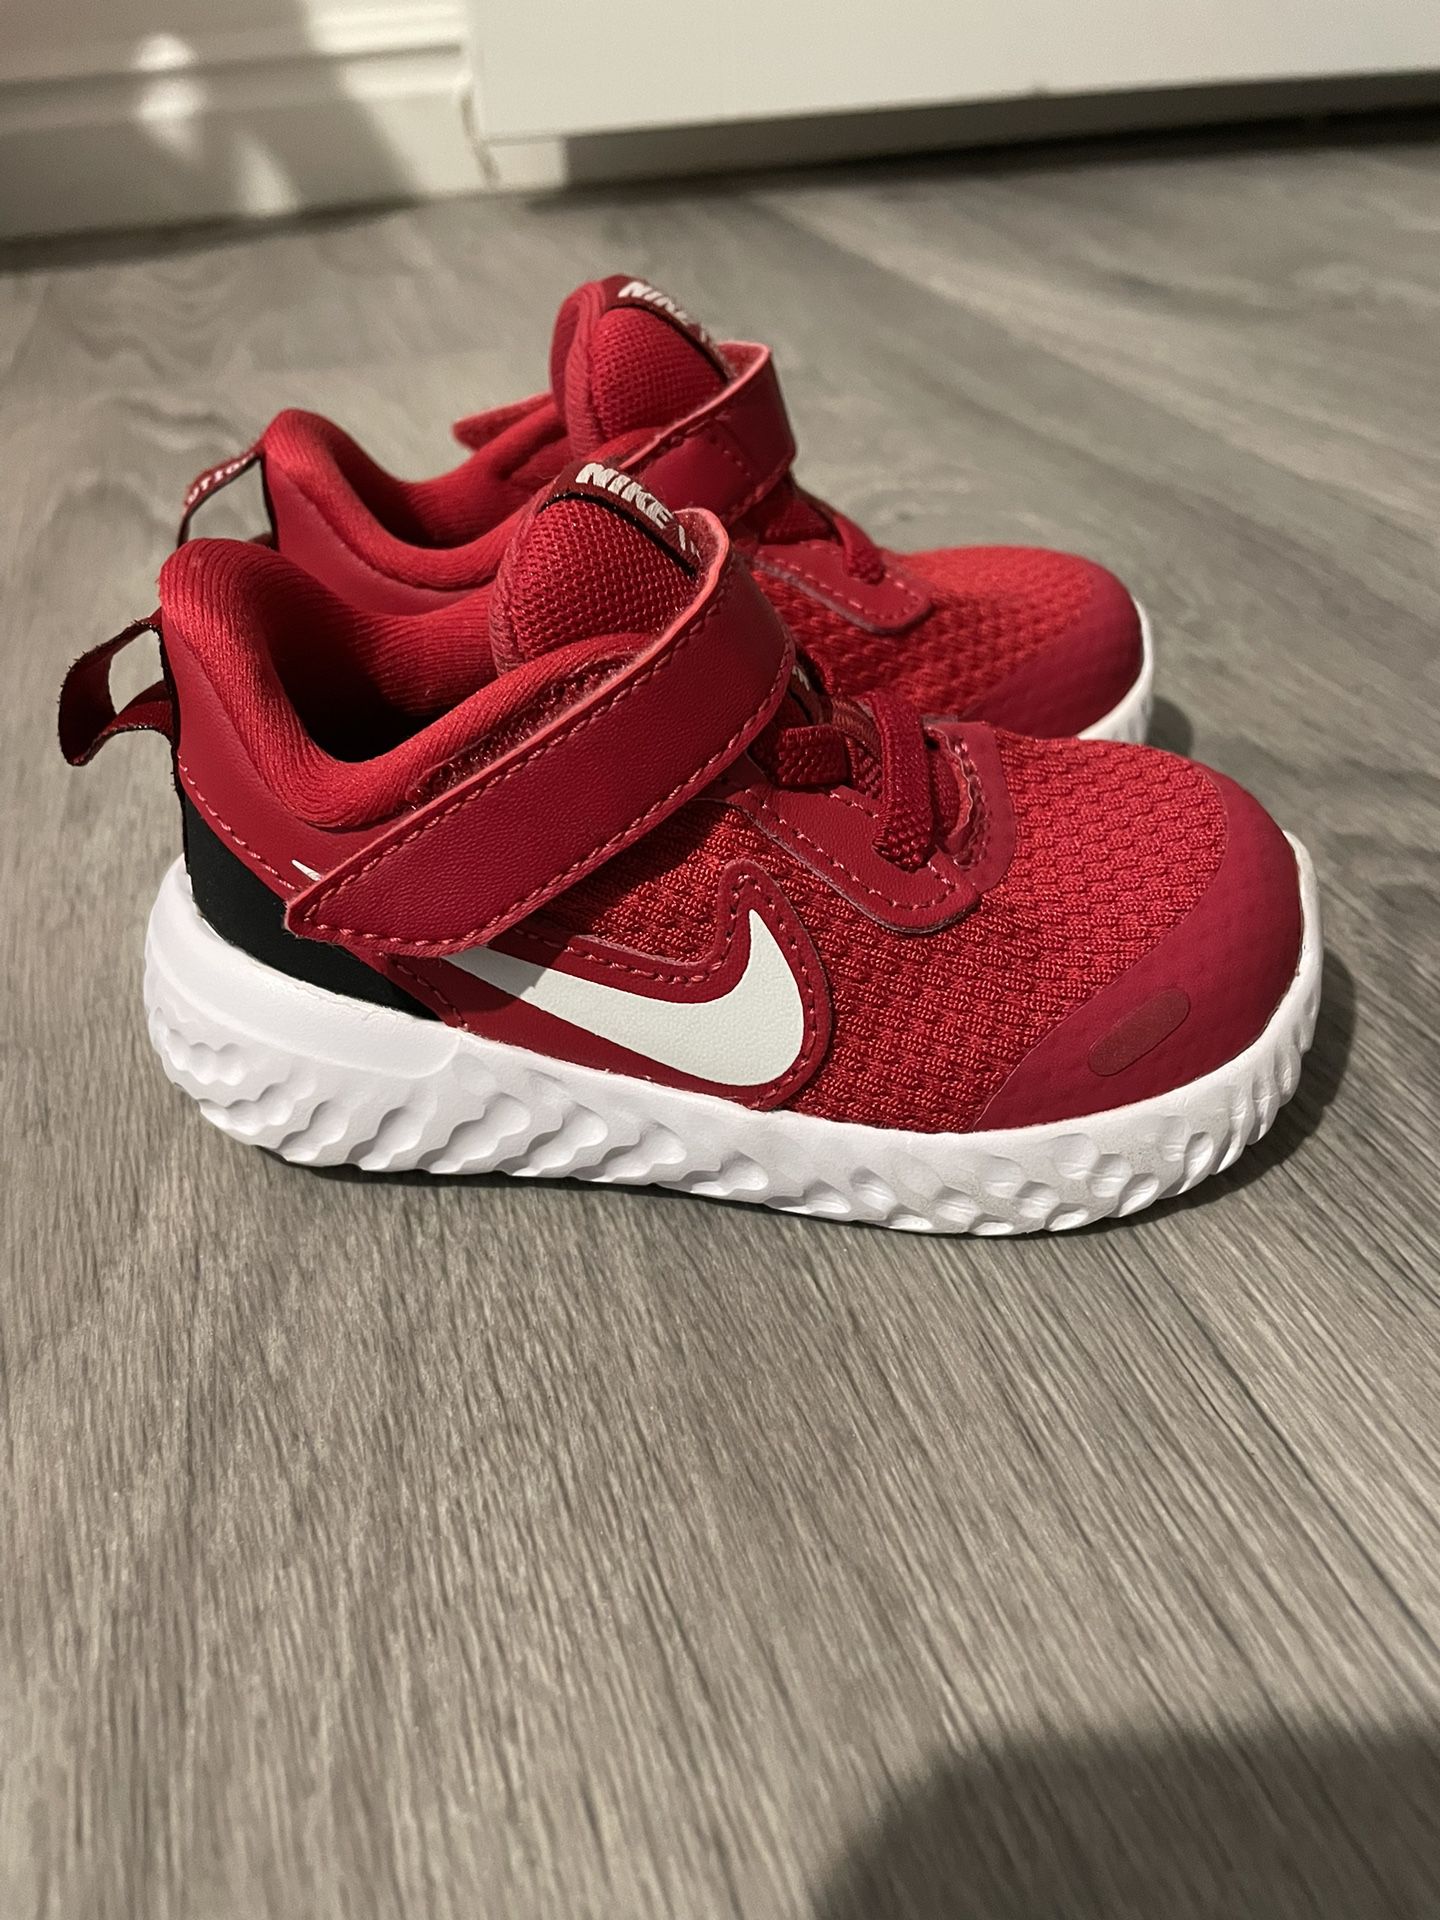 Toddler Nike 5C